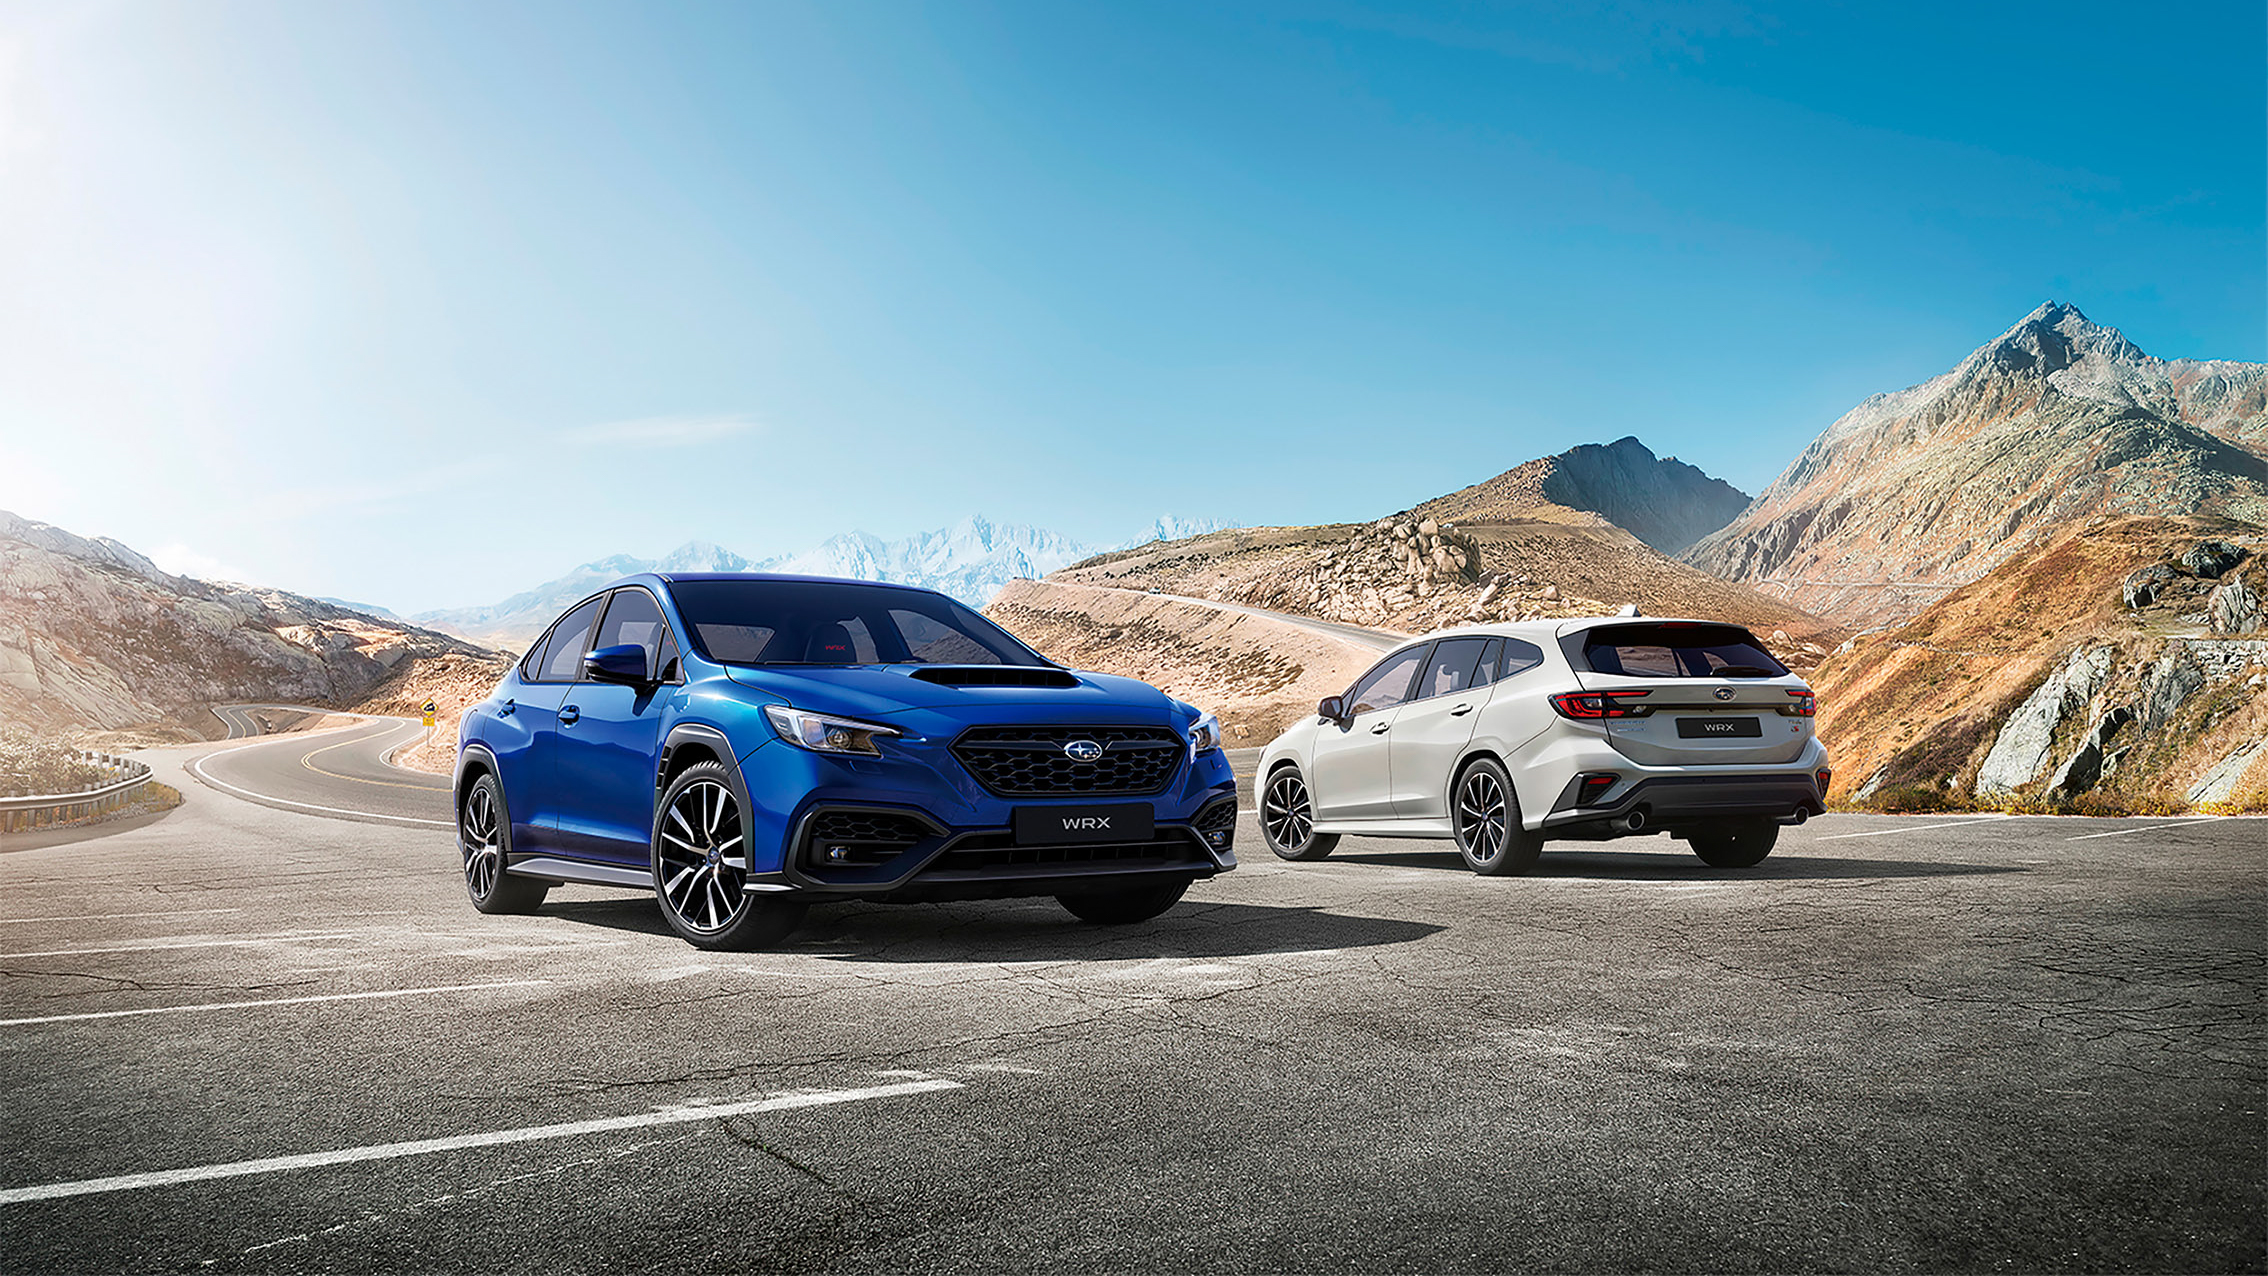 延續 Subaru 品牌月強勁買氣 全車系同享高額 0 利率優惠